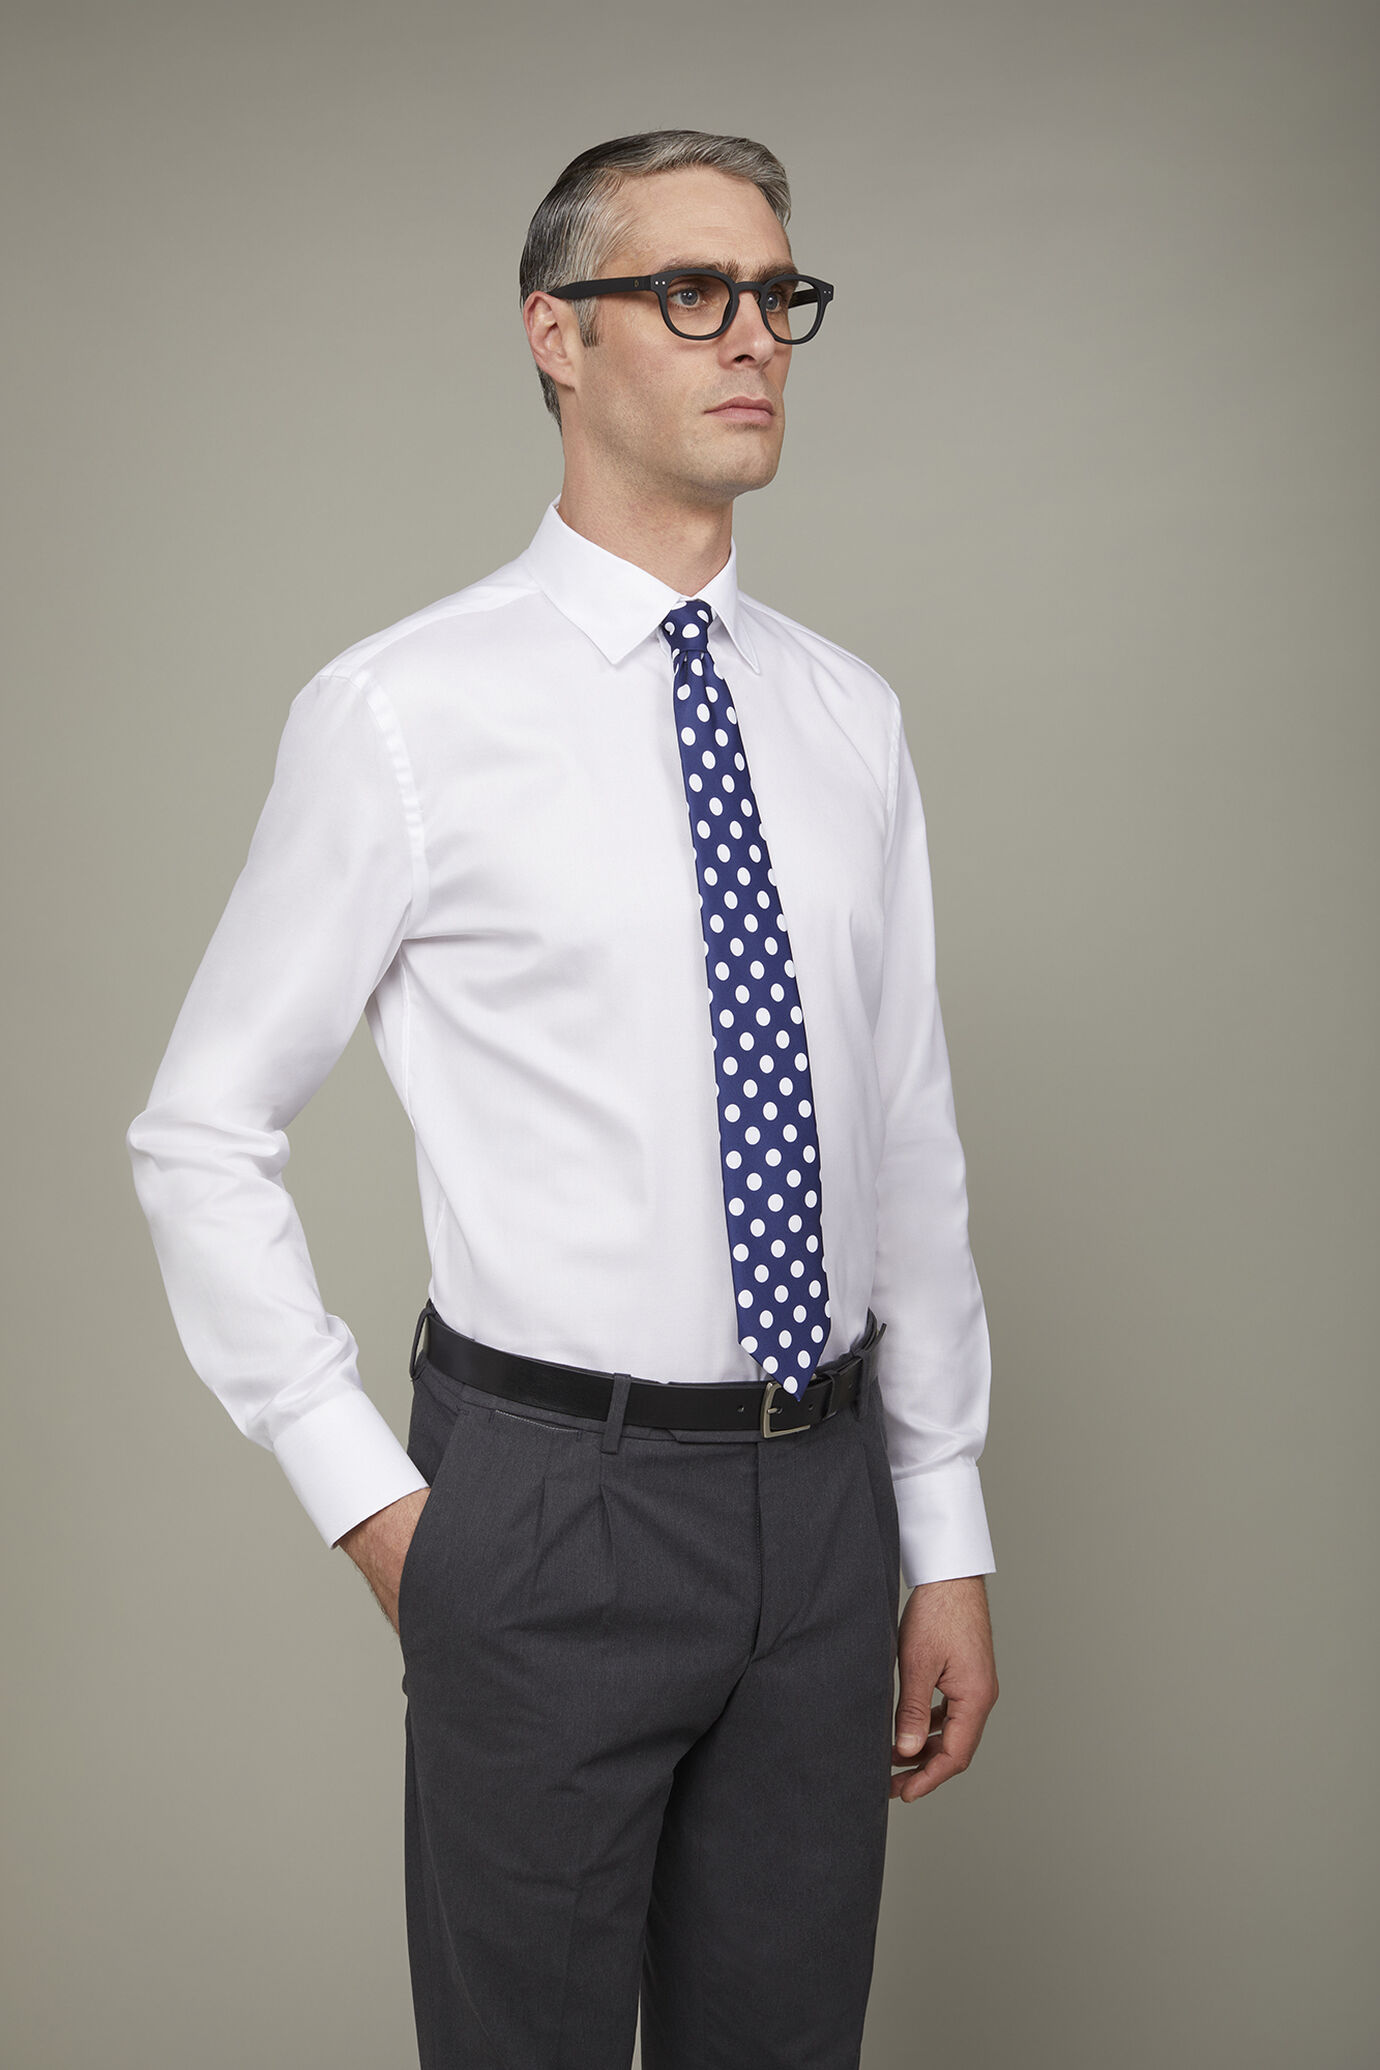 Men's shirt classic collar 100% cotton lightweight oxford fabric regular fit